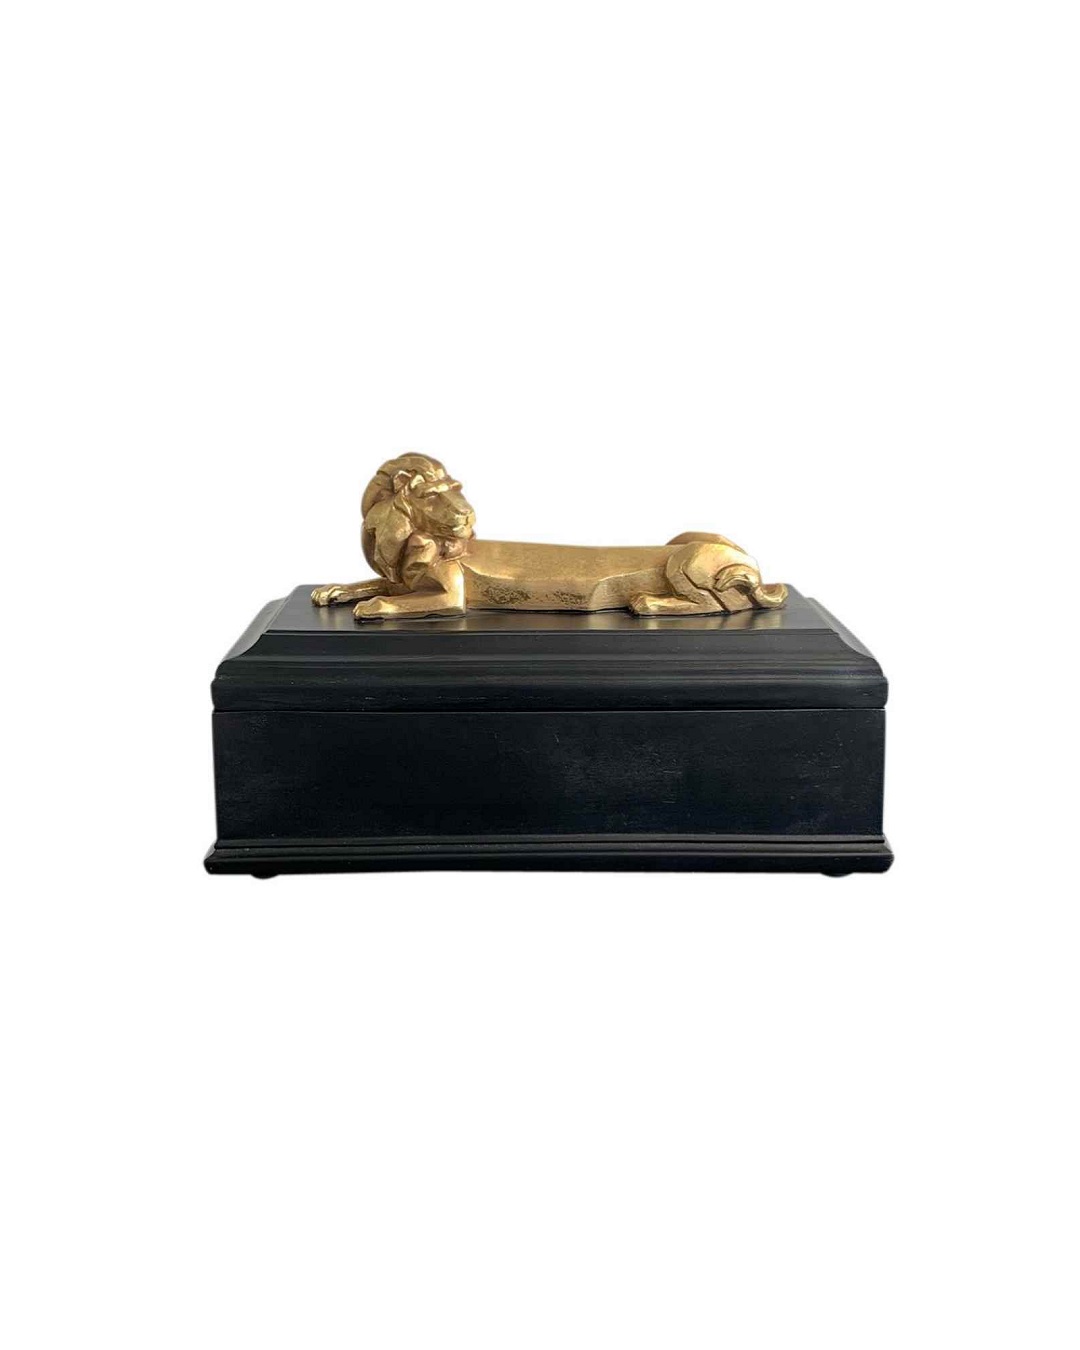 Luxe lion storage box